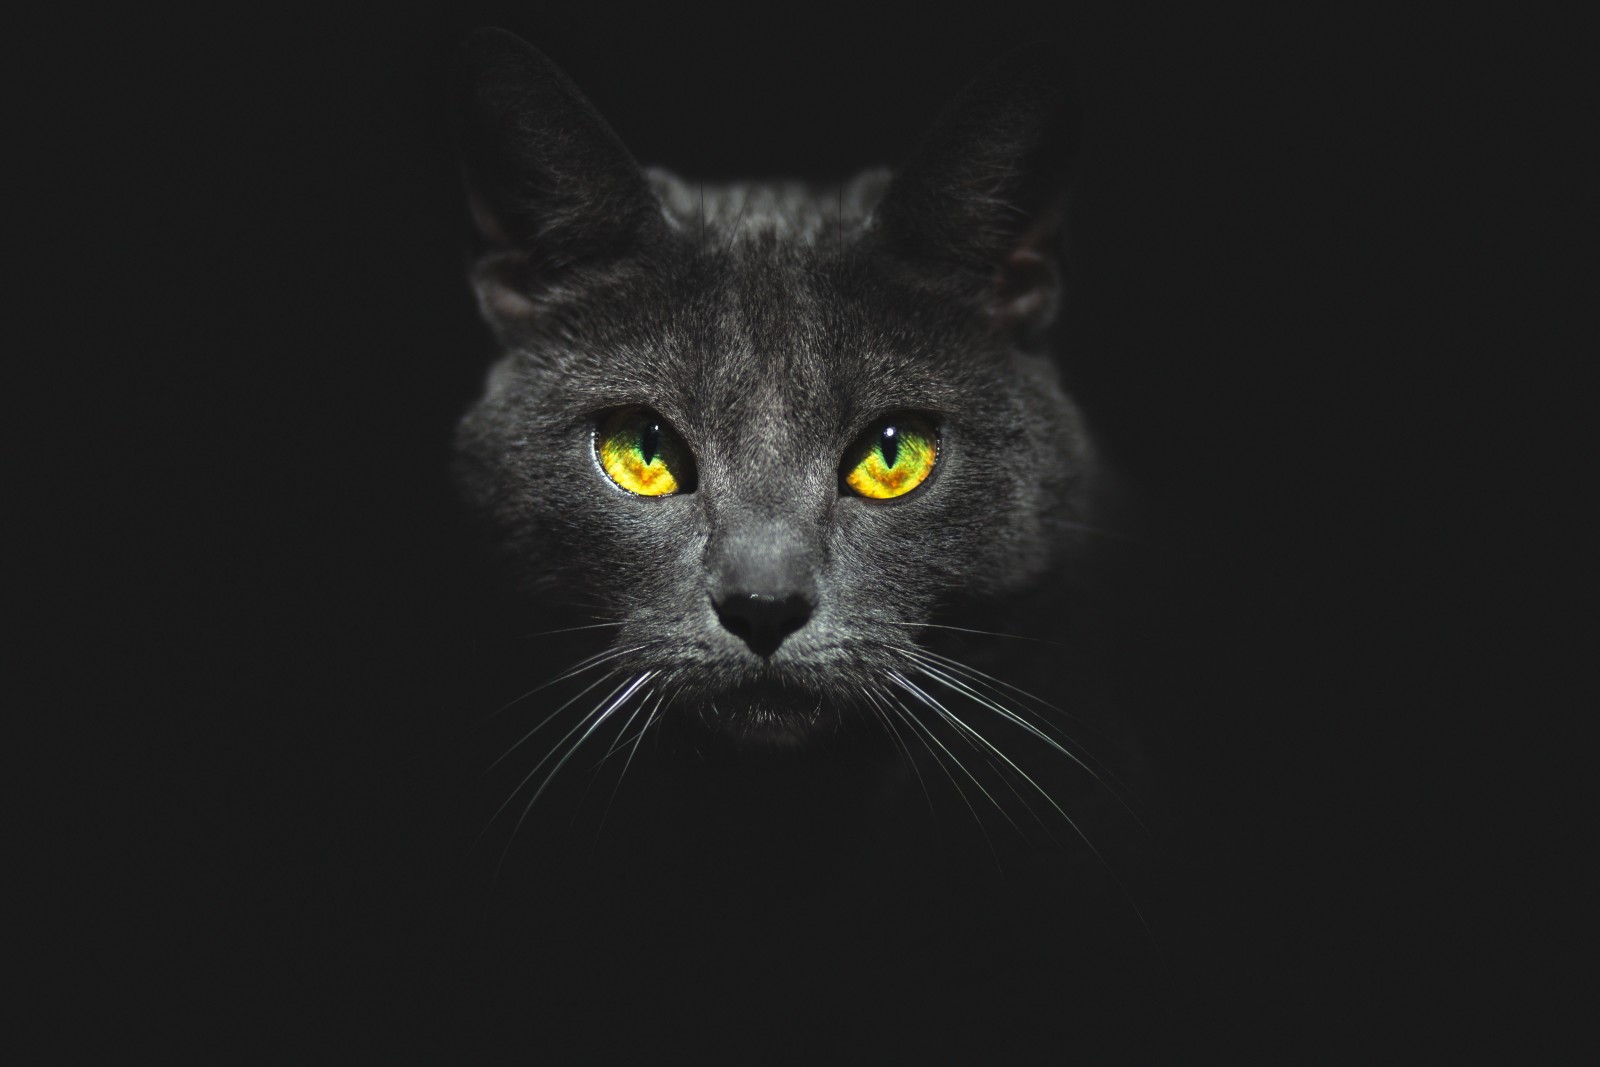 nhìn, khuôn mặt, con mèo, nền đen, đôi mắt, Kote